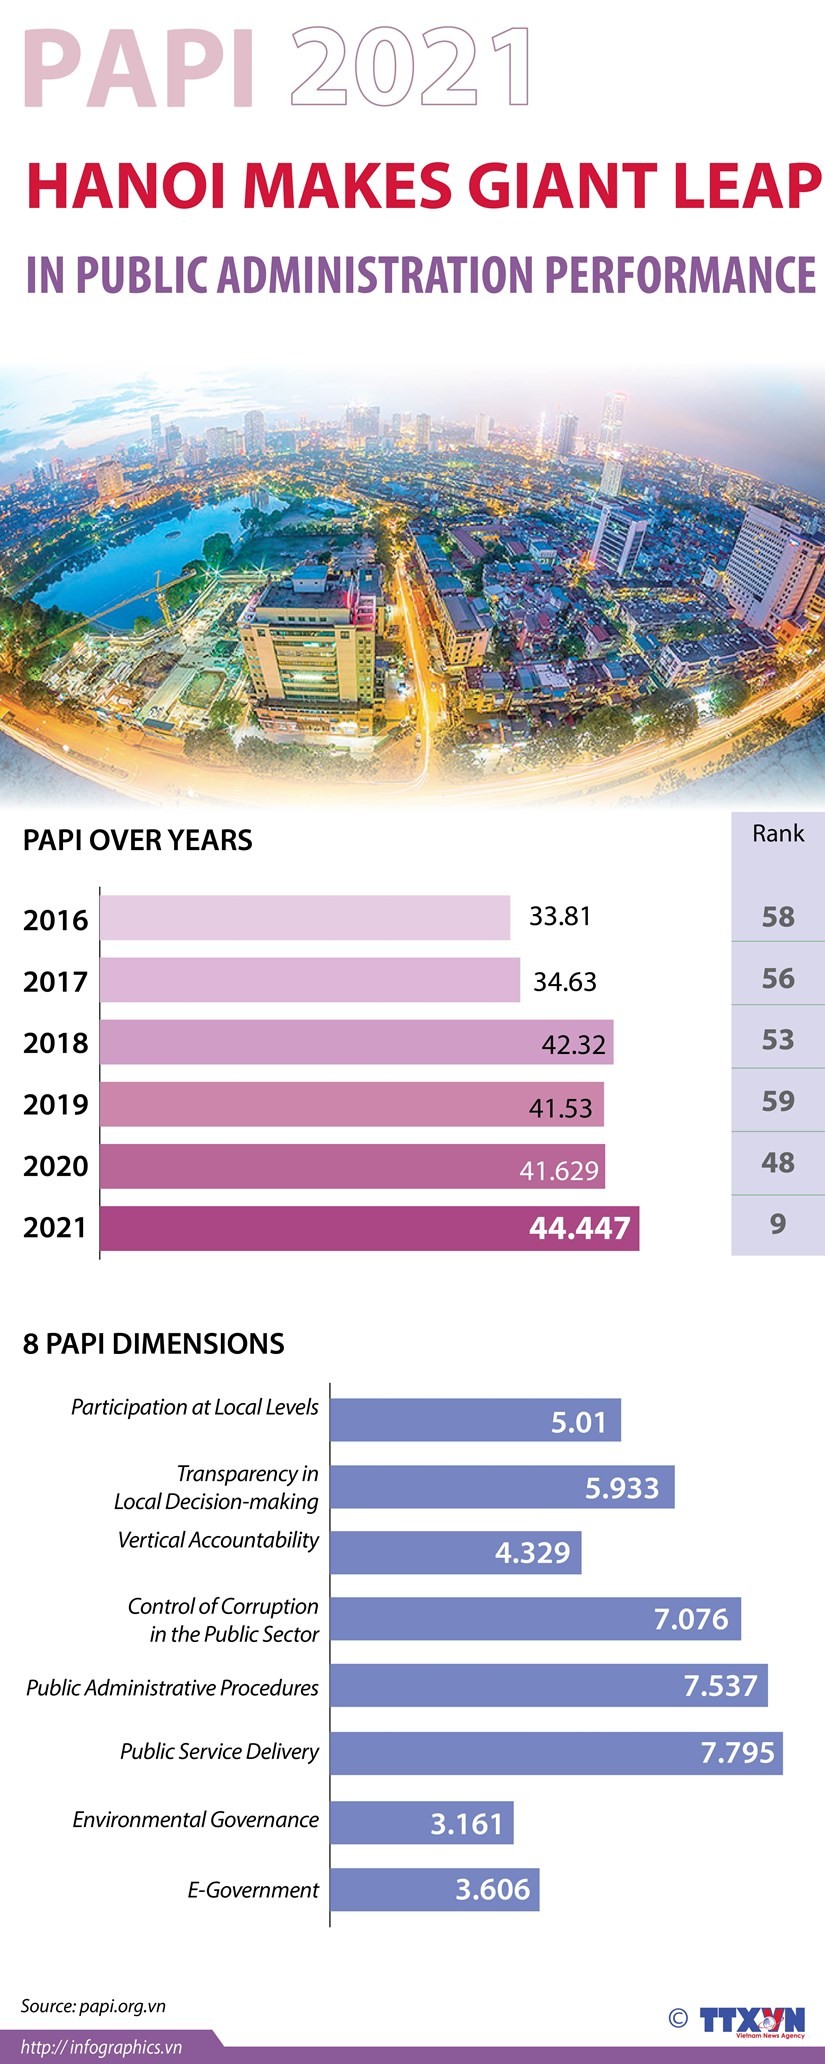 PAPI 2021: Hanoi makes giant leap